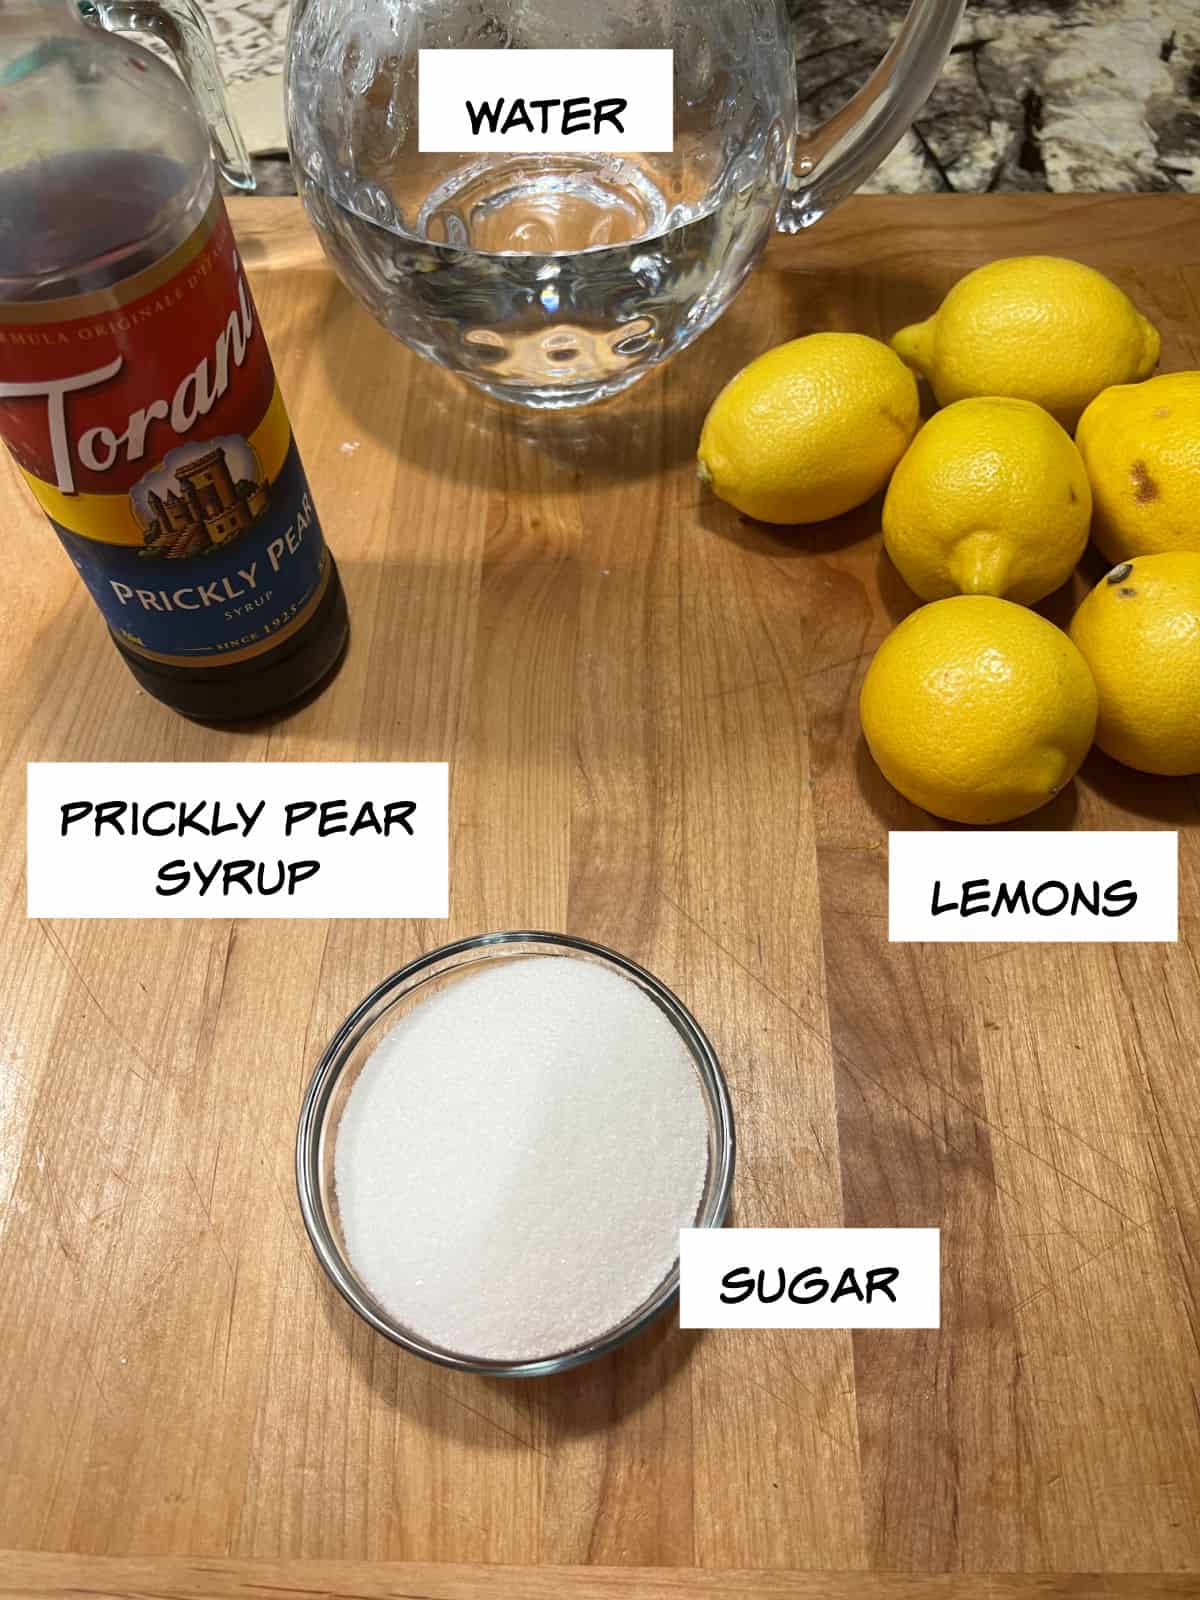 Ingredients: prickly pear syrup, lemons, sugar, and water.